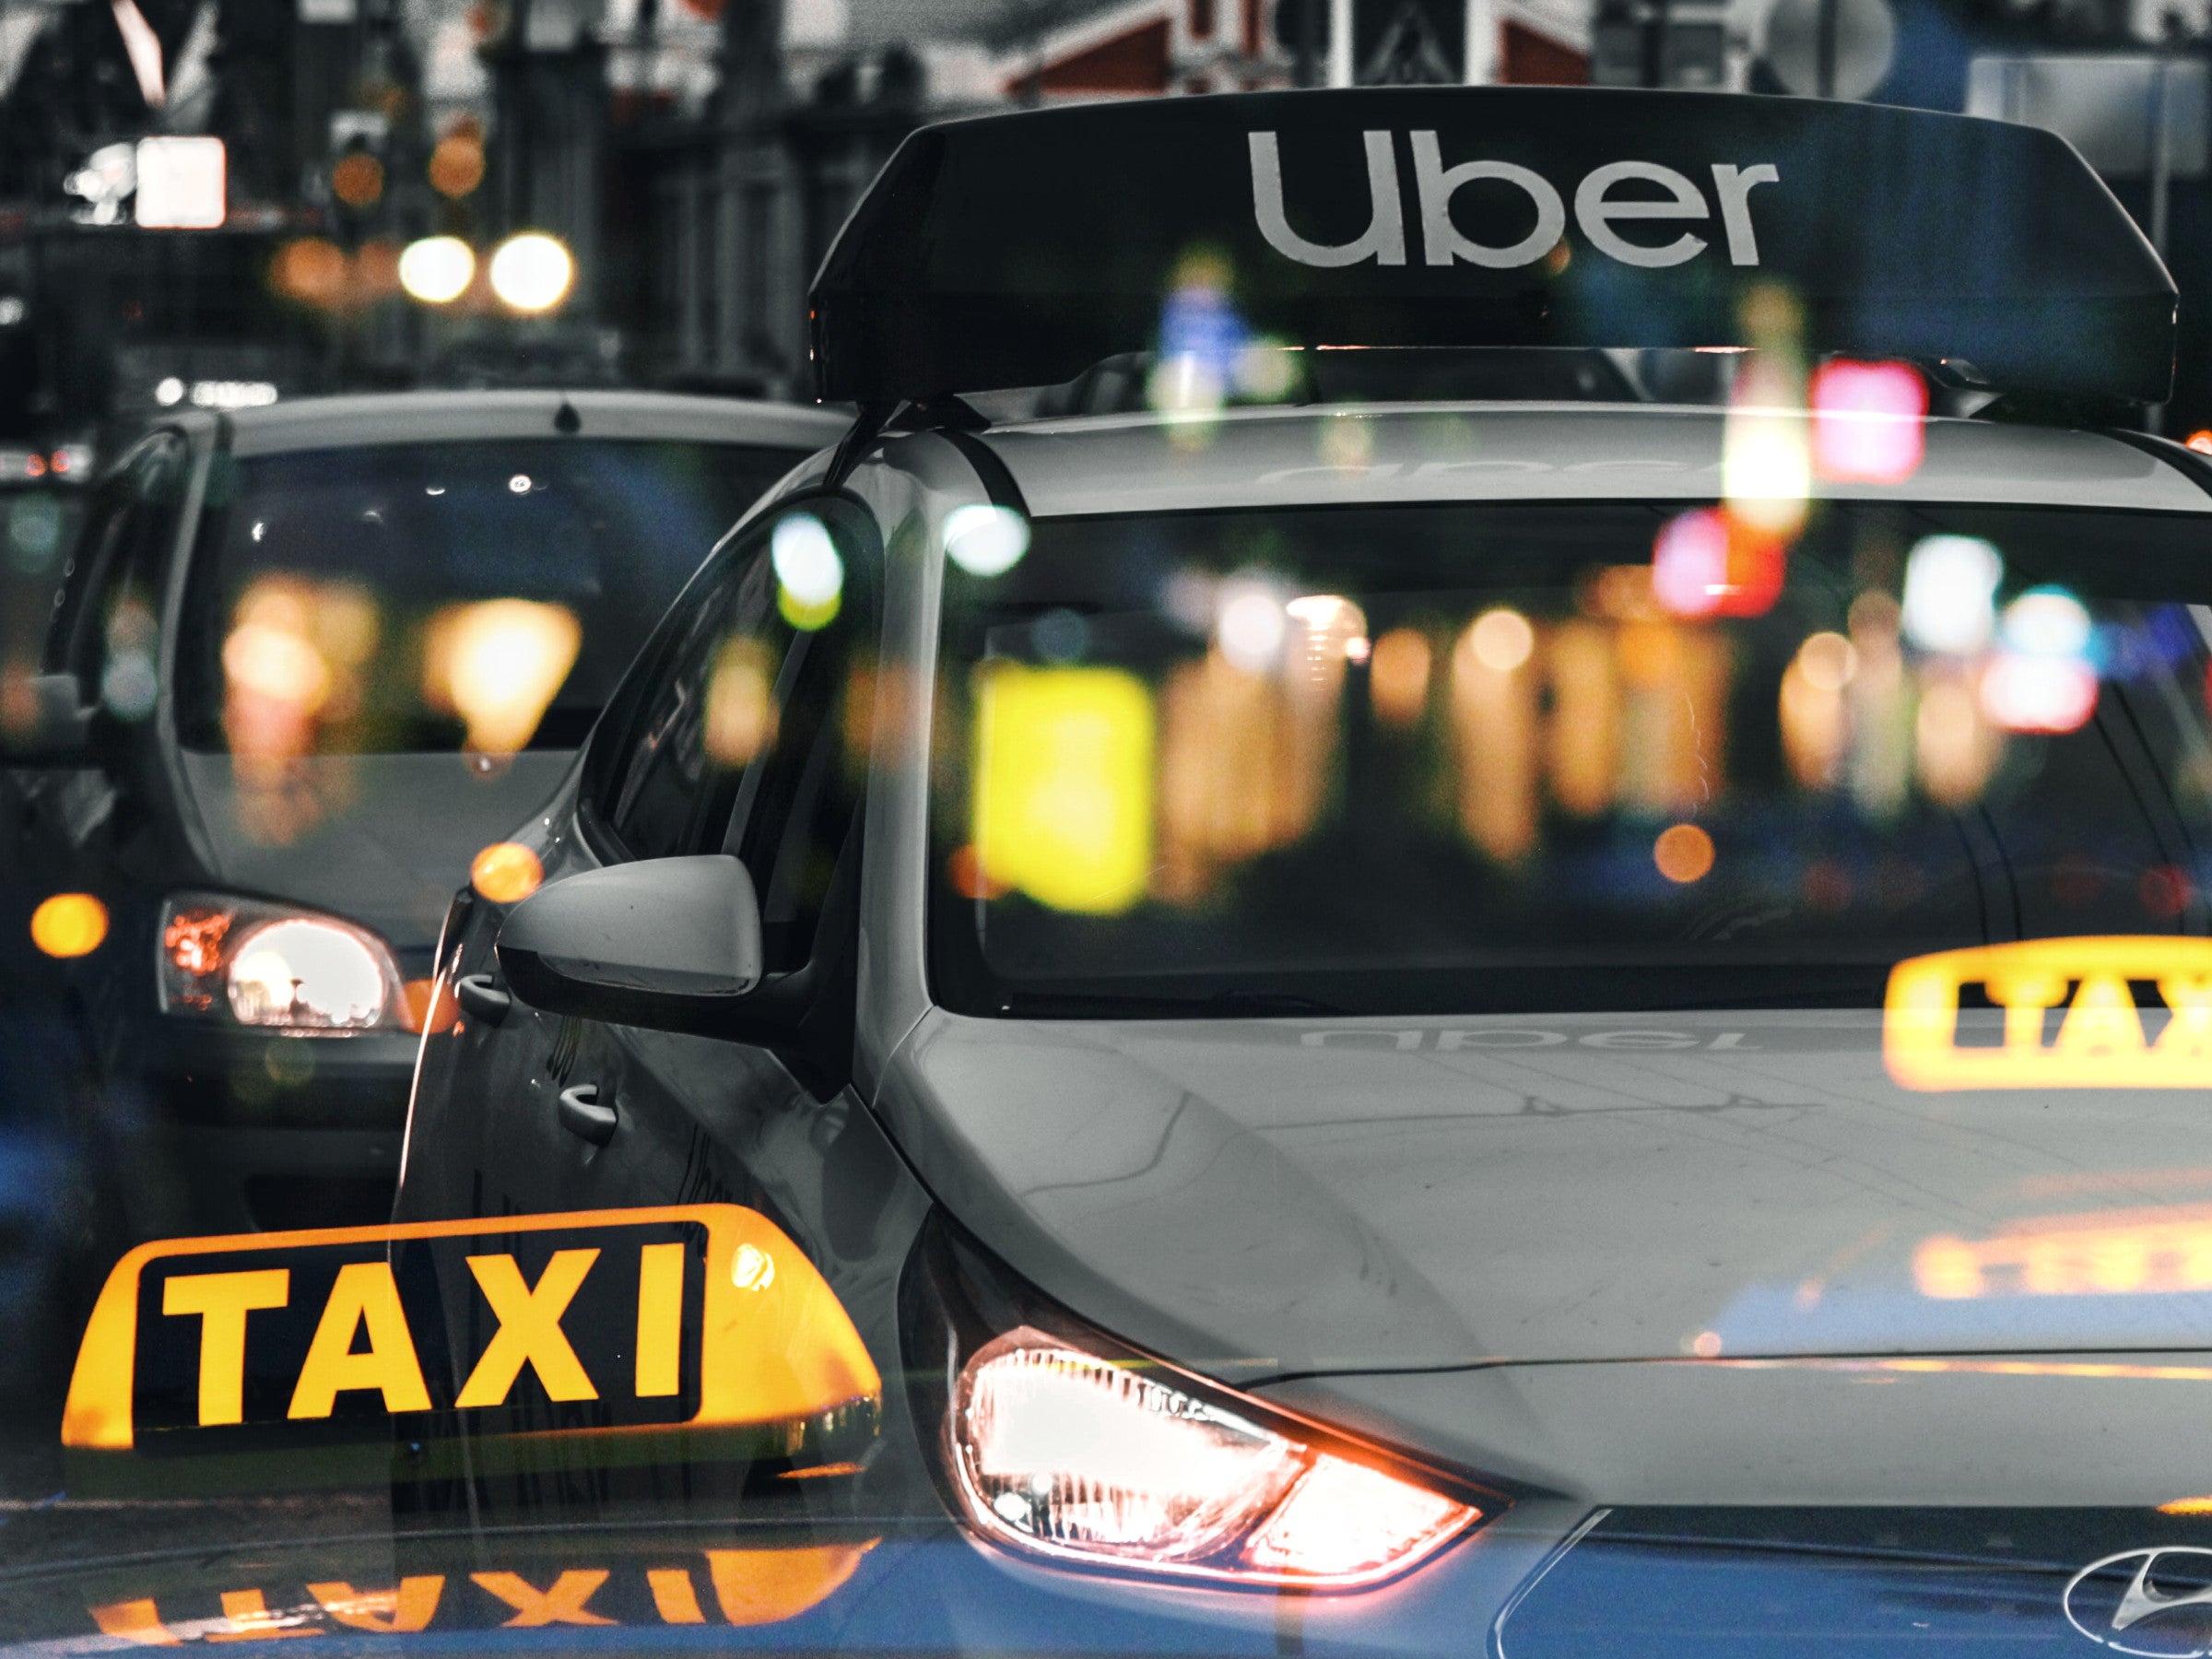 #Taxi-Killer Uber: Jetzt kannst du dir eine Yacht rufen